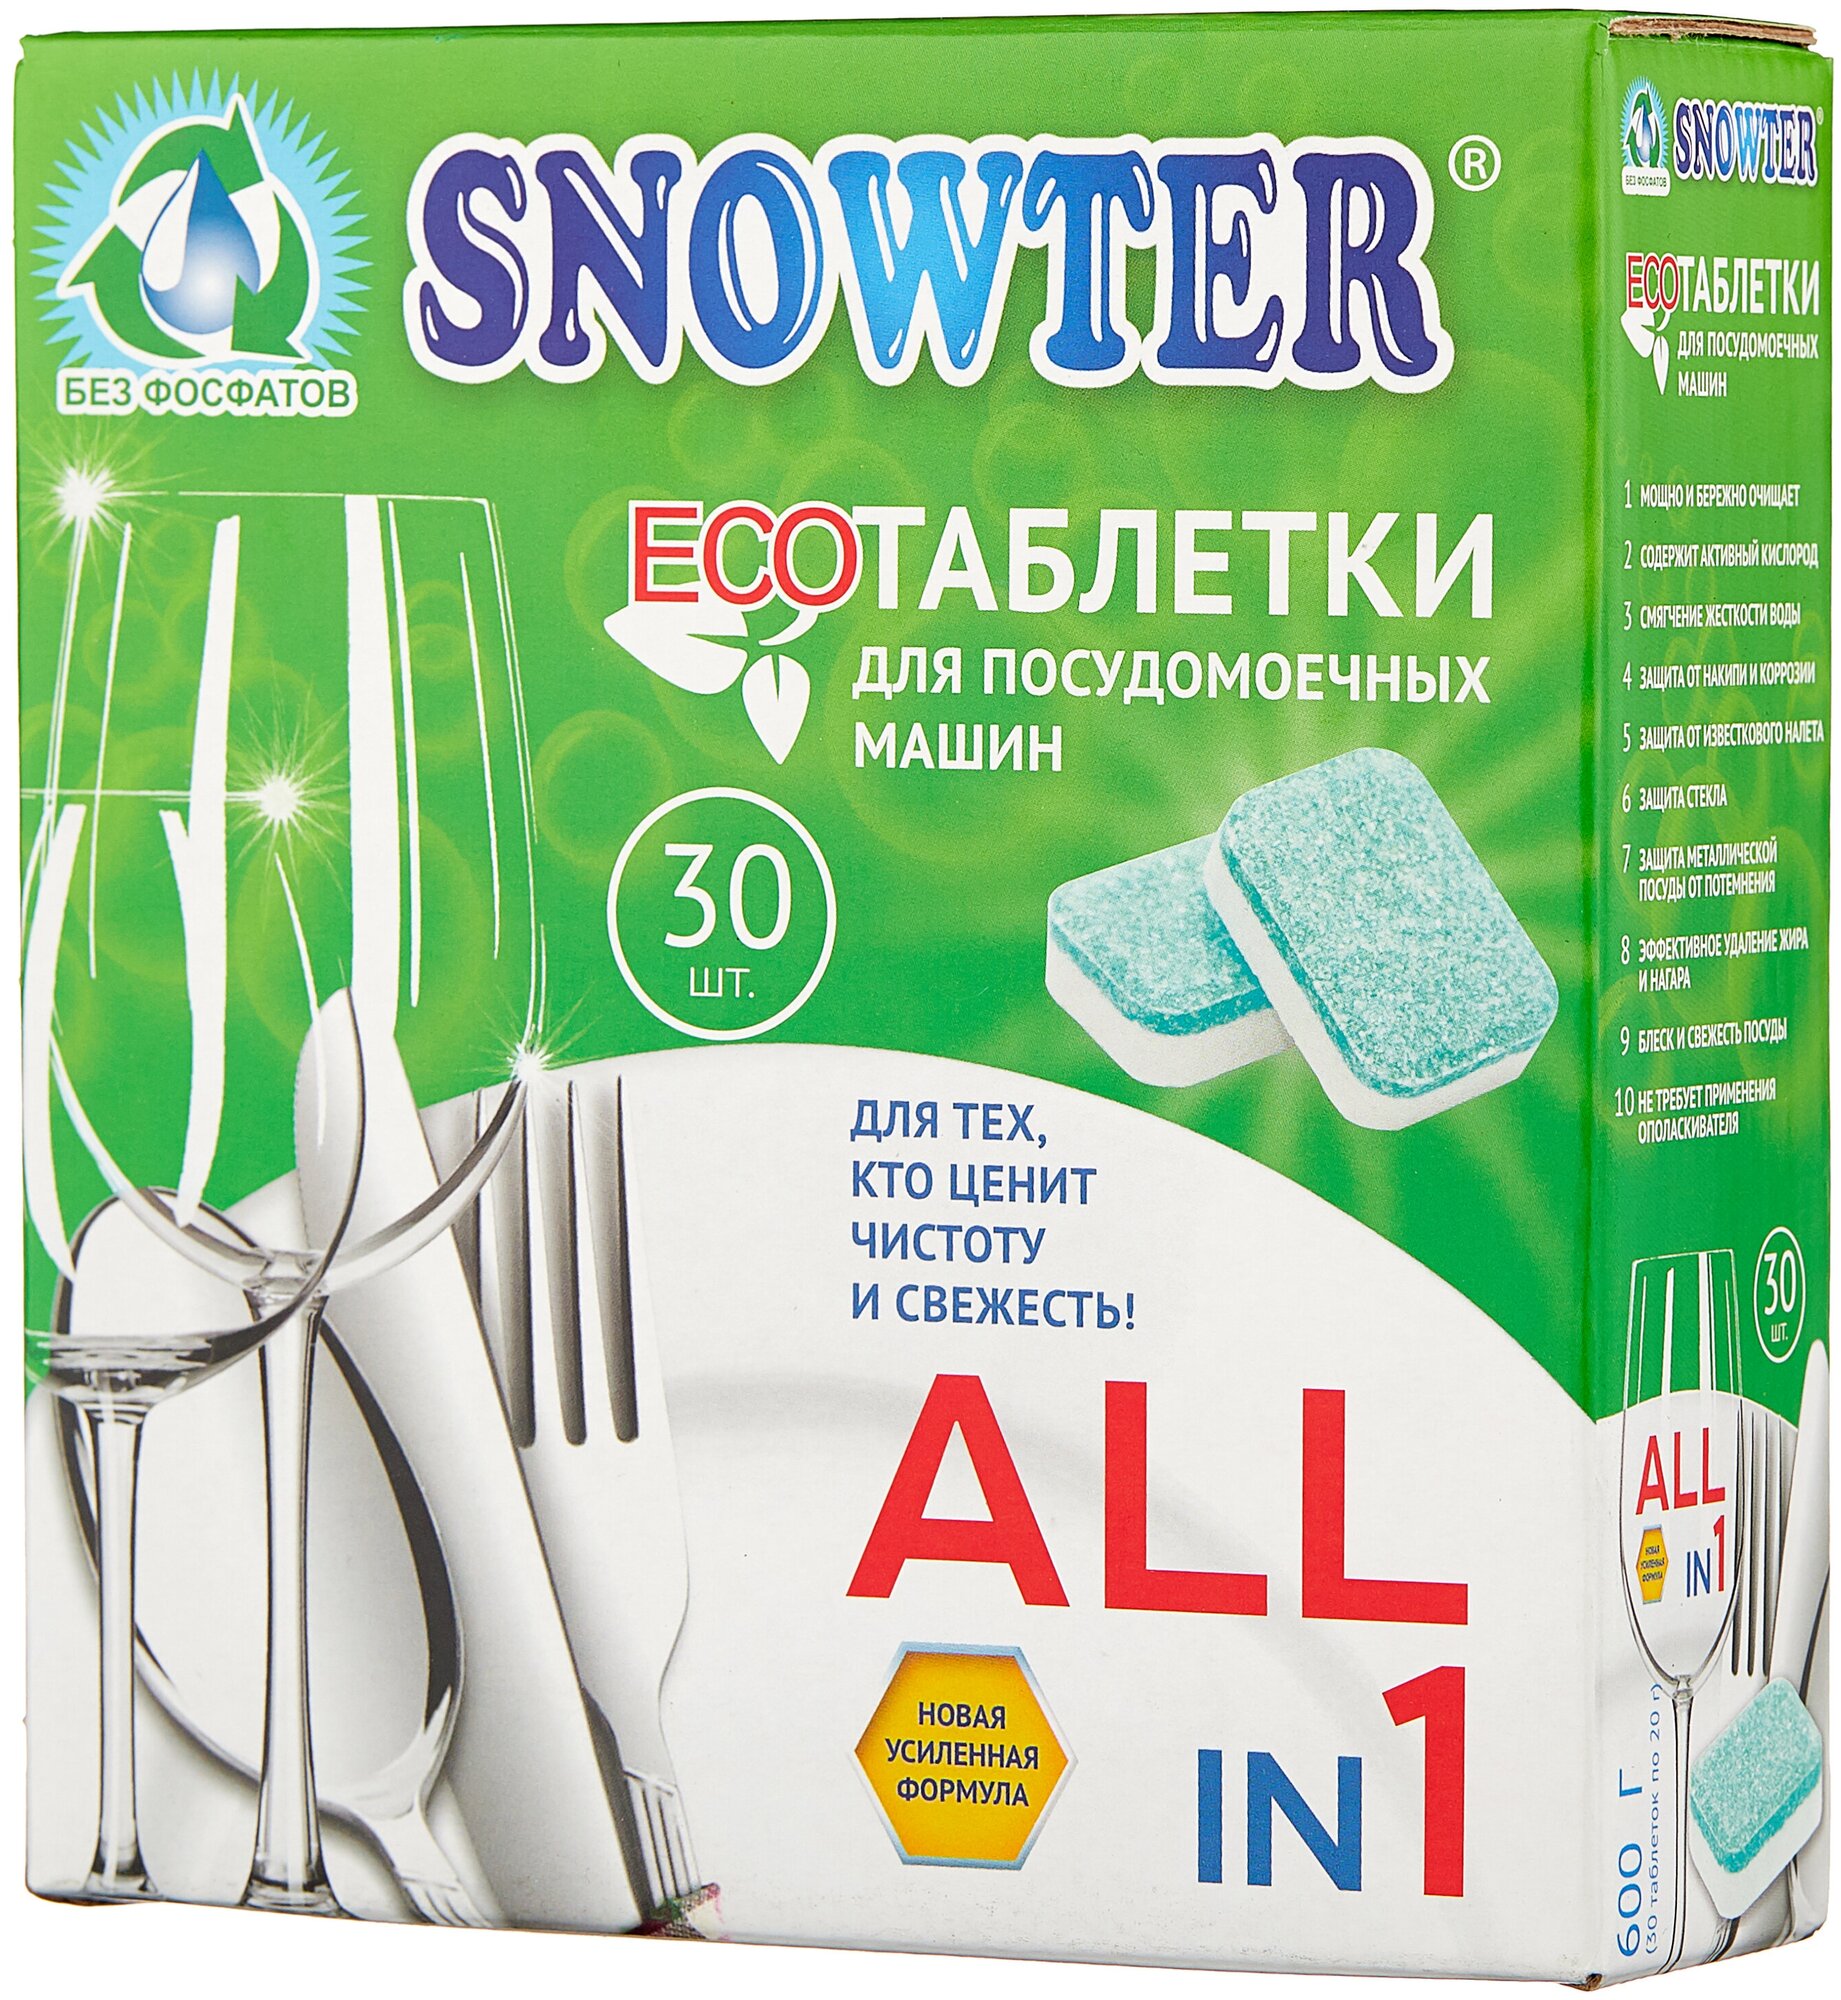 Таблетки для посудомоечной машины Snowter Эко таблетки, 30 шт., 0.02 кг